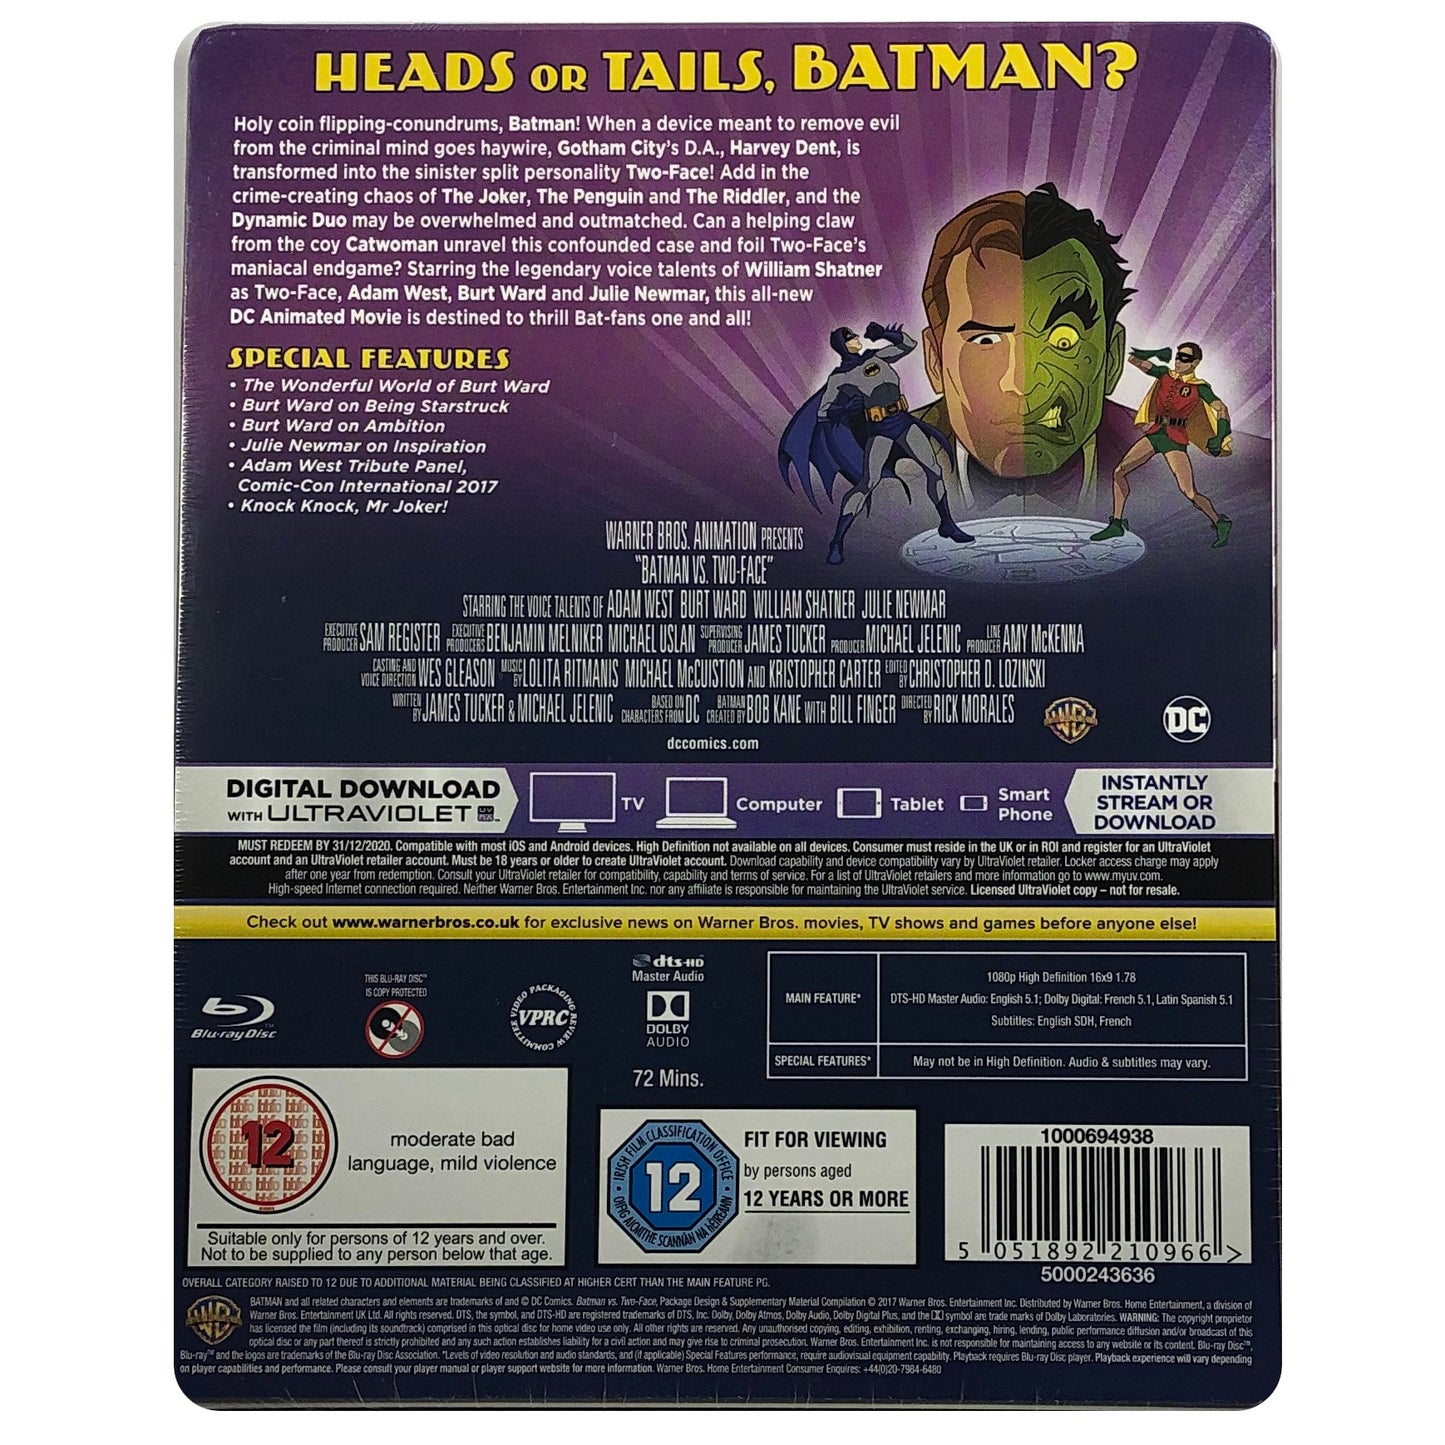 Batman Vs. Two-Face Blu-Ray Steelbook